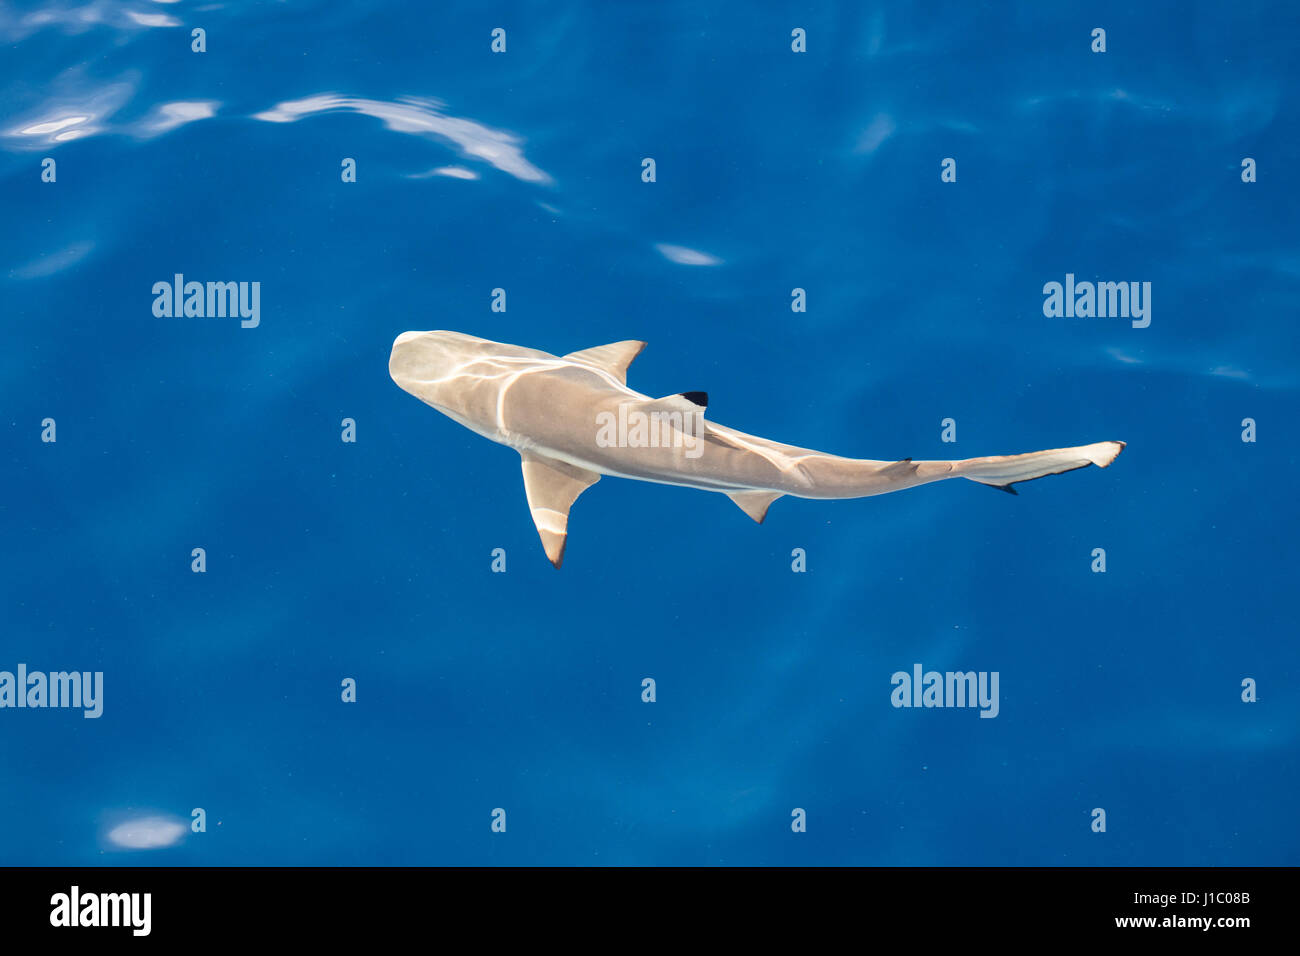 Ein Schwarzspitzen-Riffhai (Carcharhinus Melanopterus) schwimmt im sonnendurchfluteten, seichten Wasser in der Republik Palau. Dieses Gebiet ist bekannt für seine viele Haie. Stockfoto